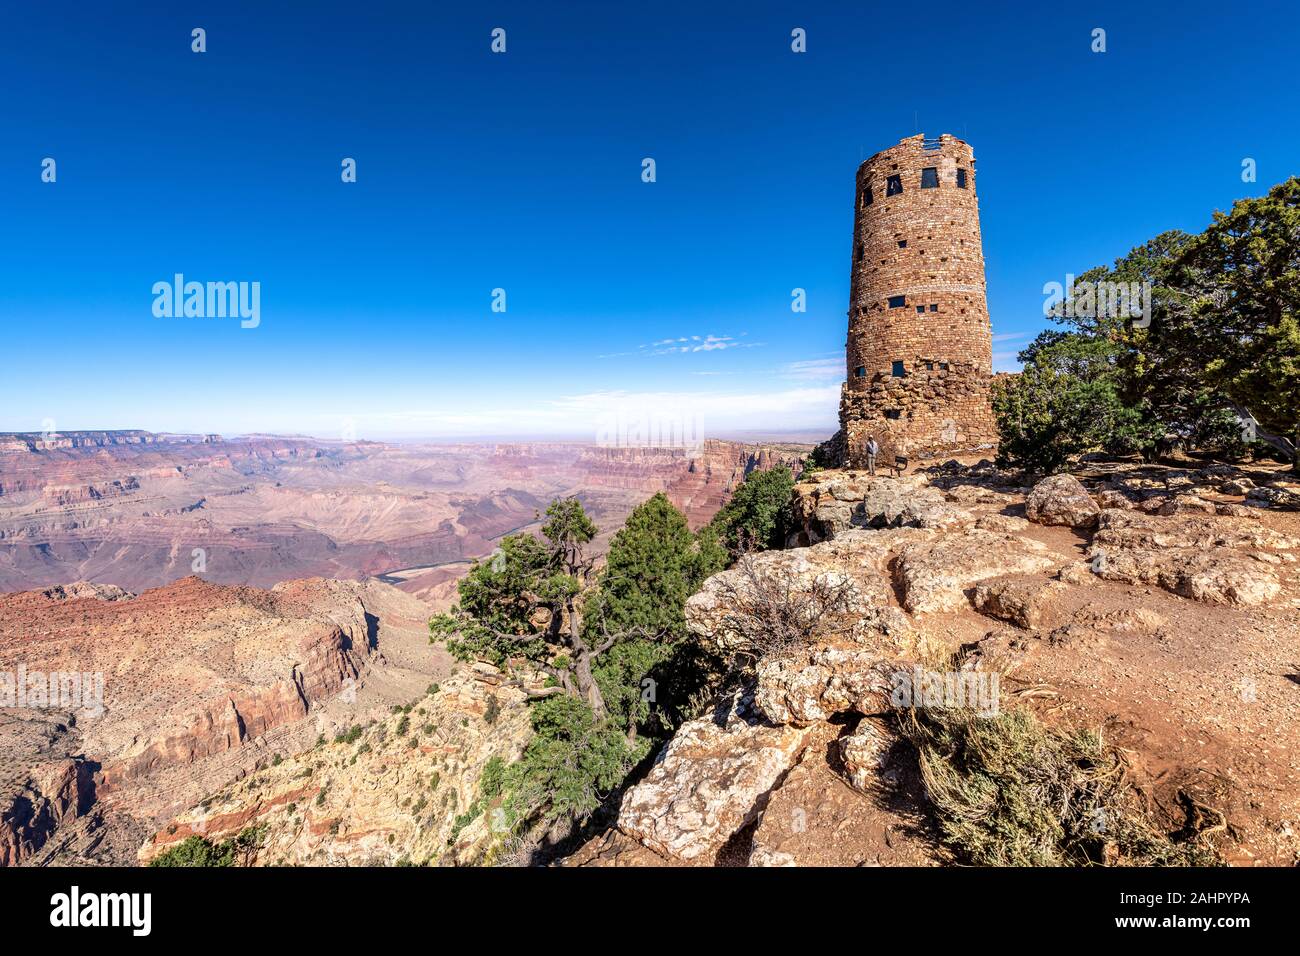 Une vue panoramique sur les montagnes de Grand Canyon Desert View Watchtower formulée contre un ciel bleu. Banque D'Images